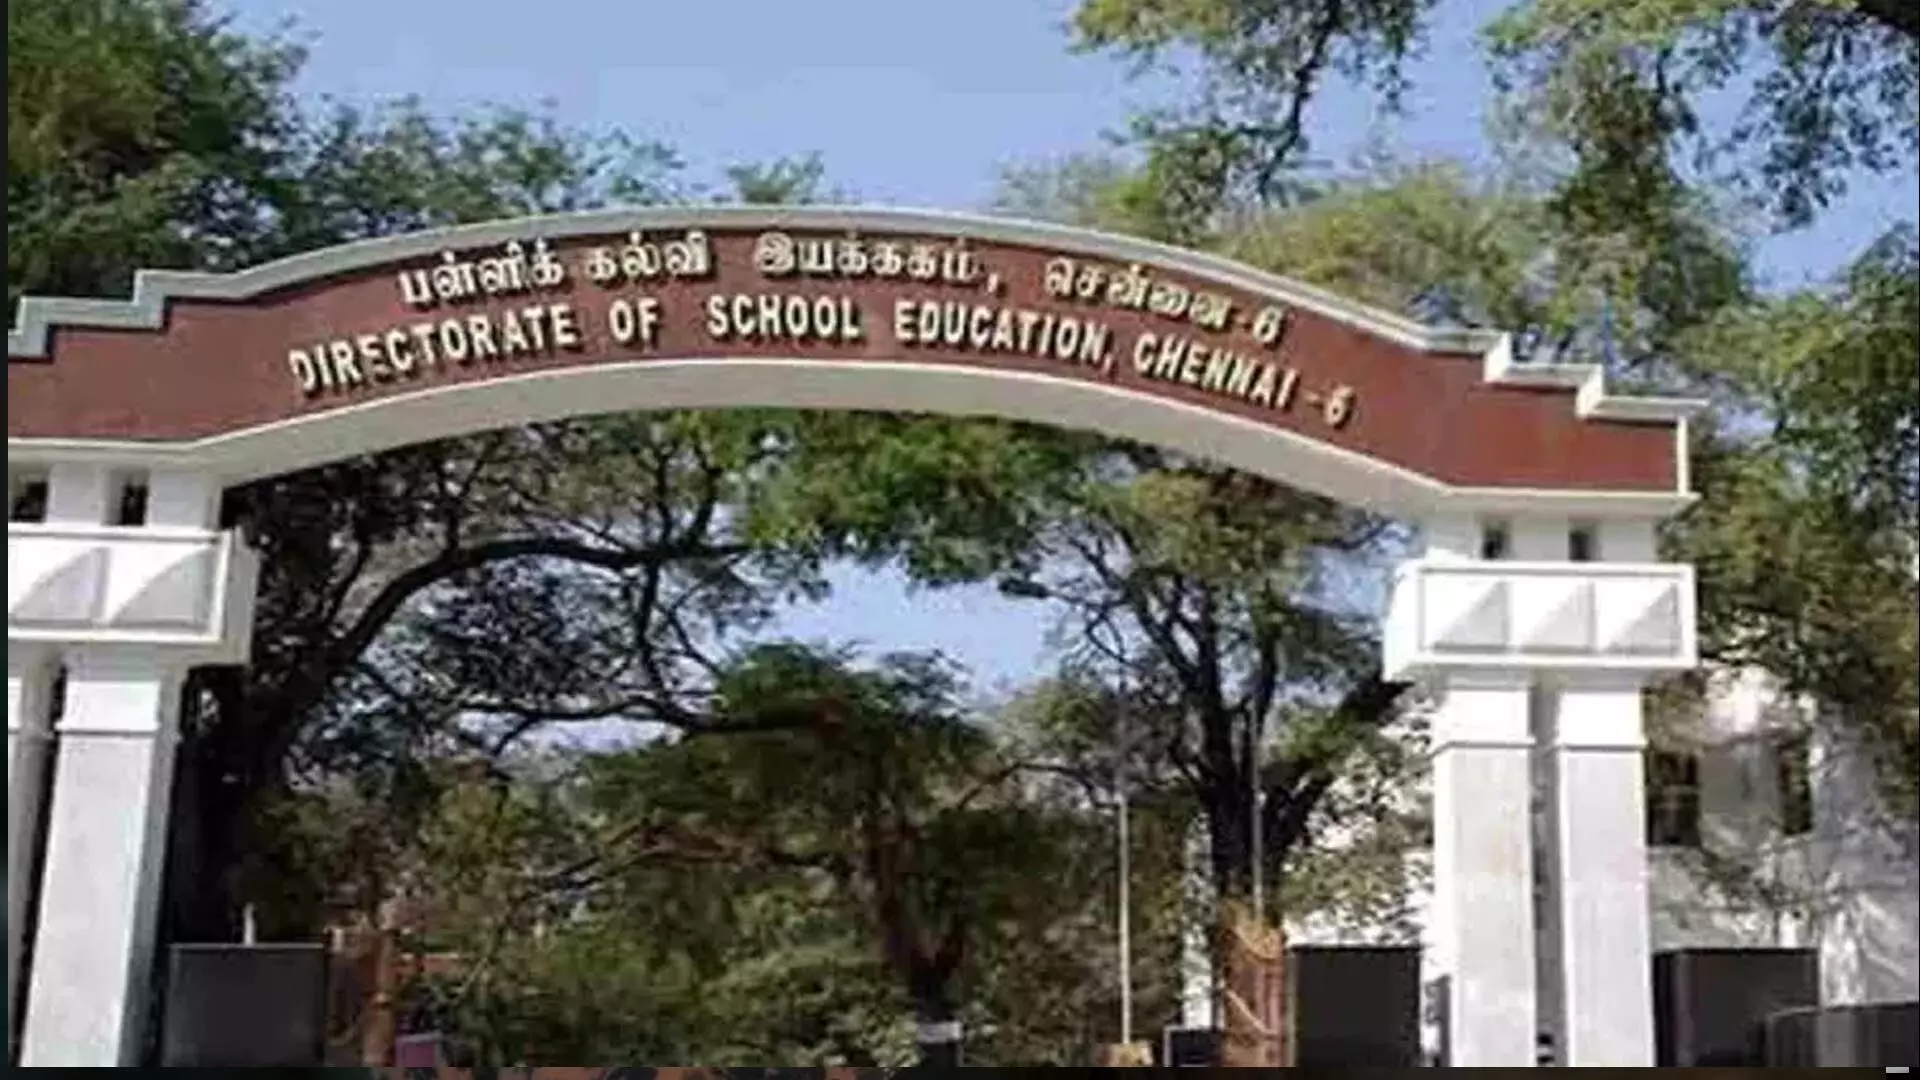 तमिलनाडु स्कूल शिक्षा विभाग माता-पिता, कर्मचारियों, शिक्षकों को थोक संदेश भेजने के लिए व्हाट्सएप के साथ गठजोड़ करेगा